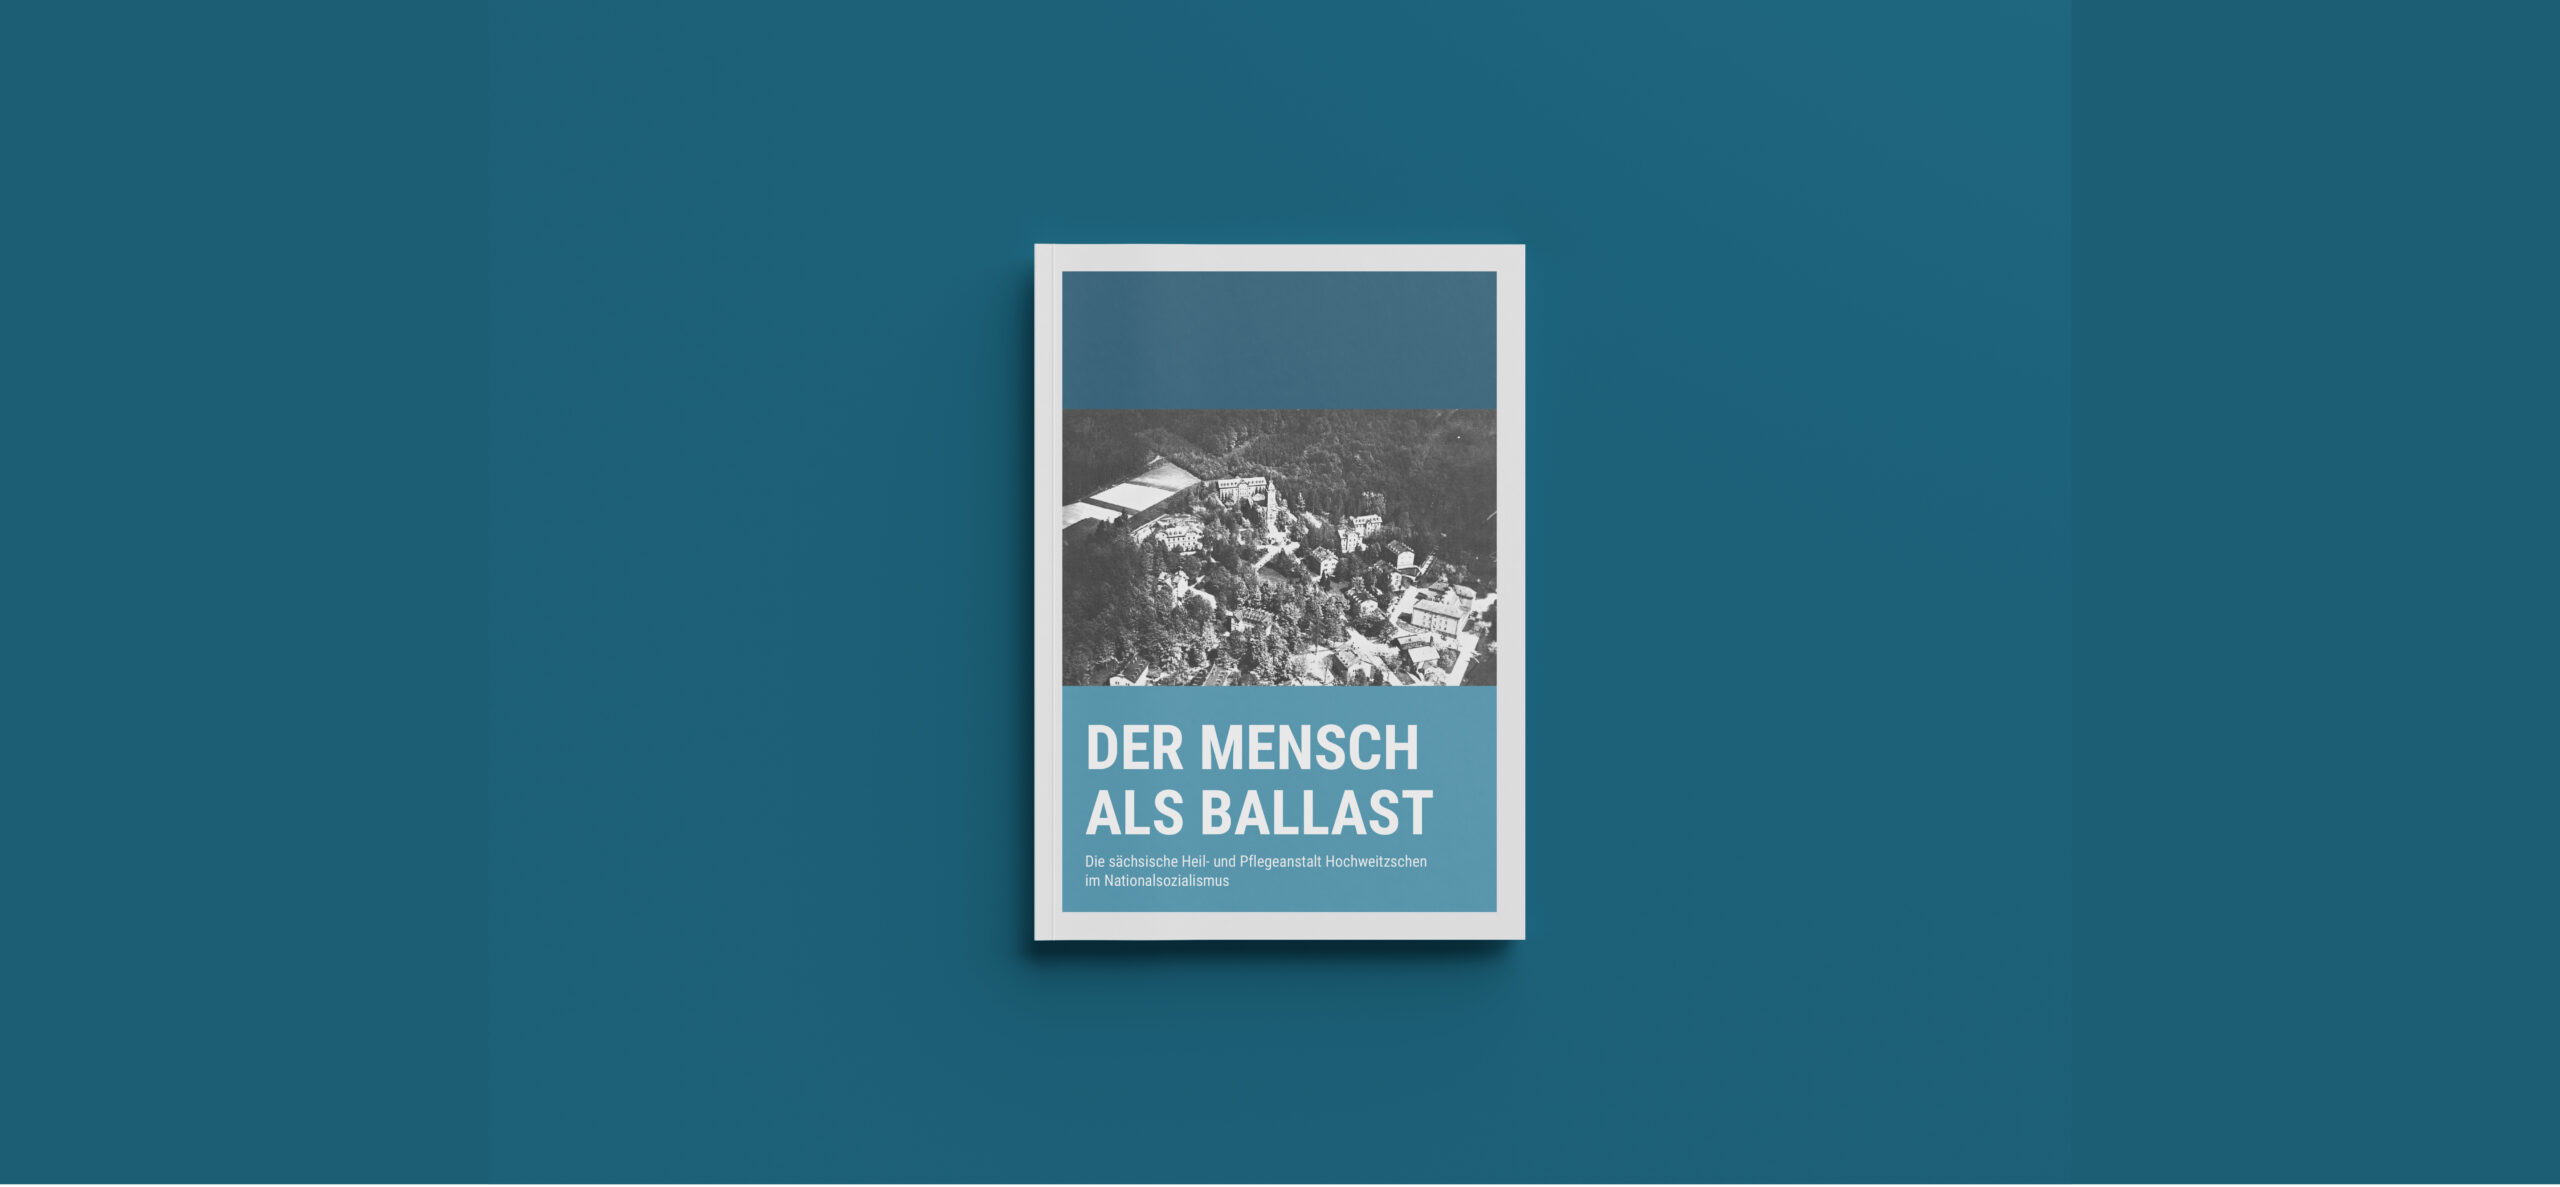 Symbolbild: Cover der Broschüre Der Mensch als Ballast, vor einem blauen Hintergrund.